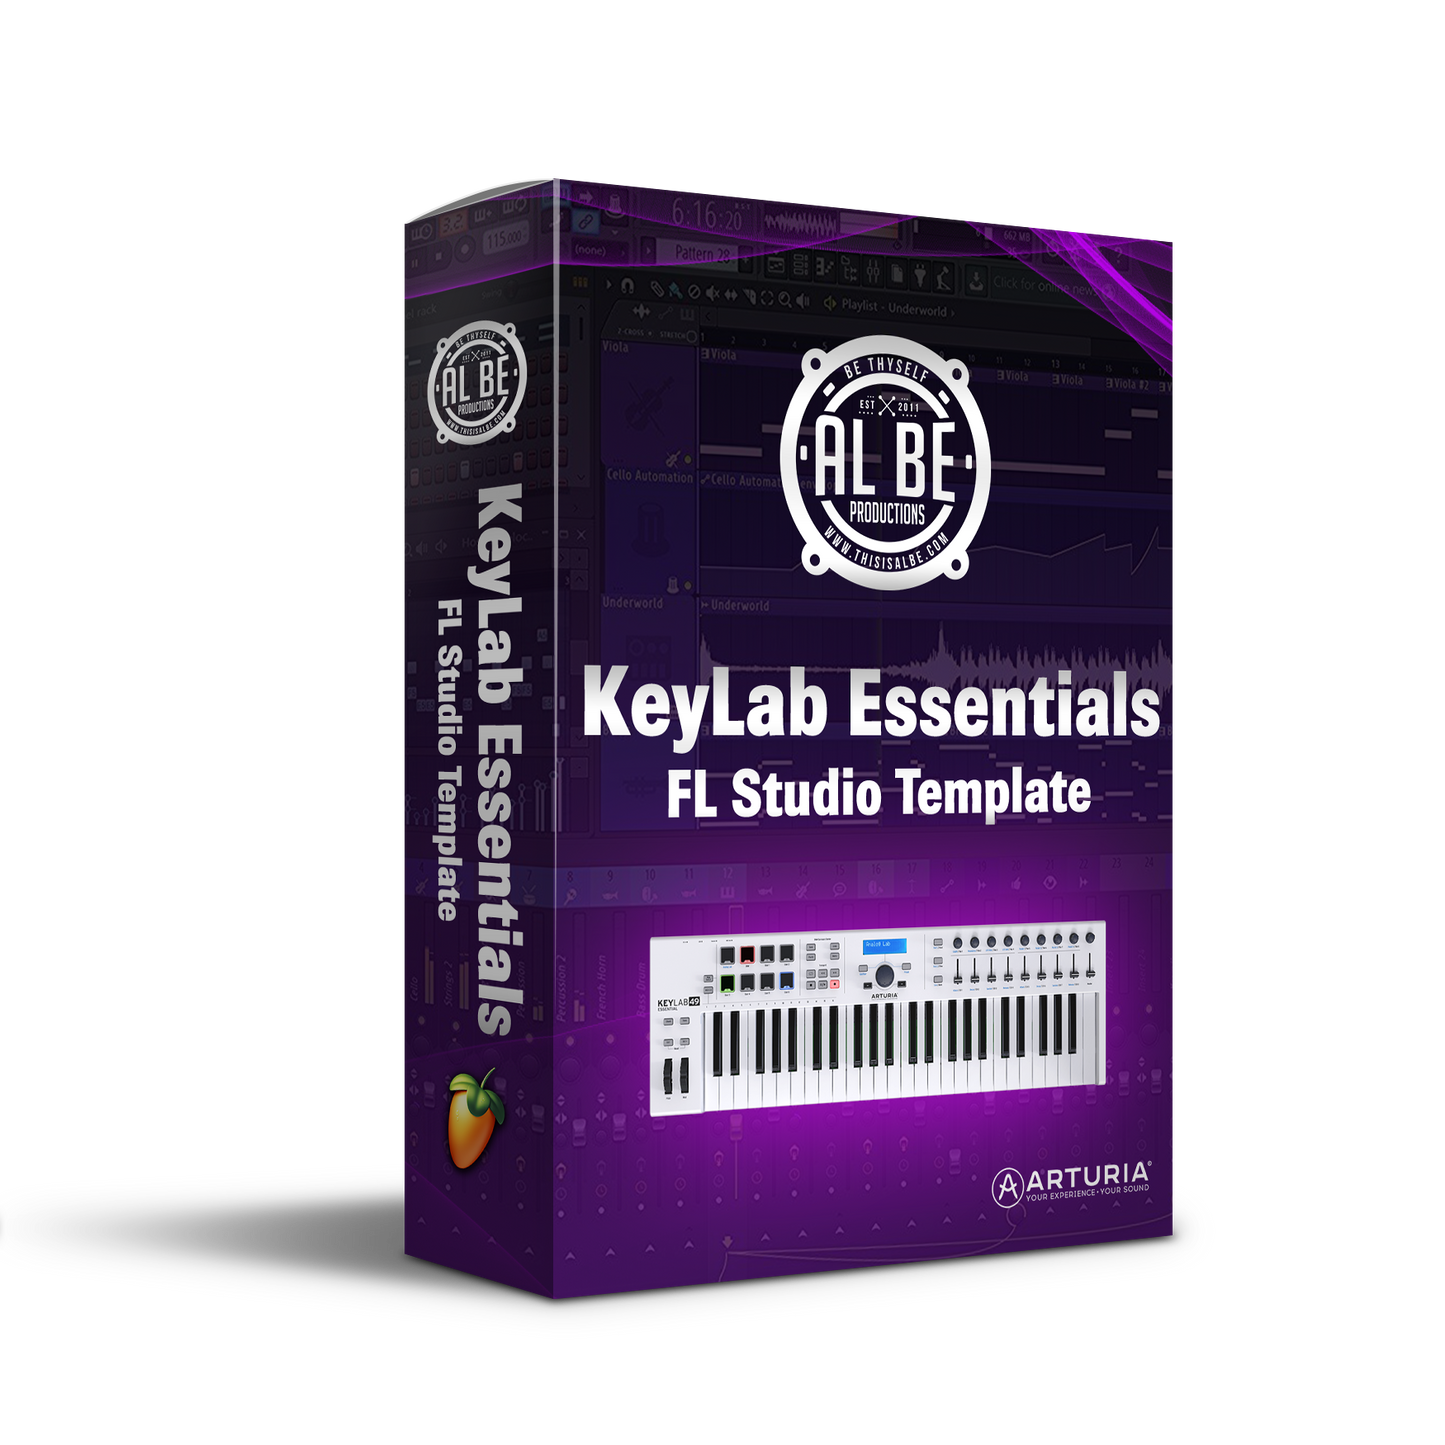 Keylab Essential FL Studio Template